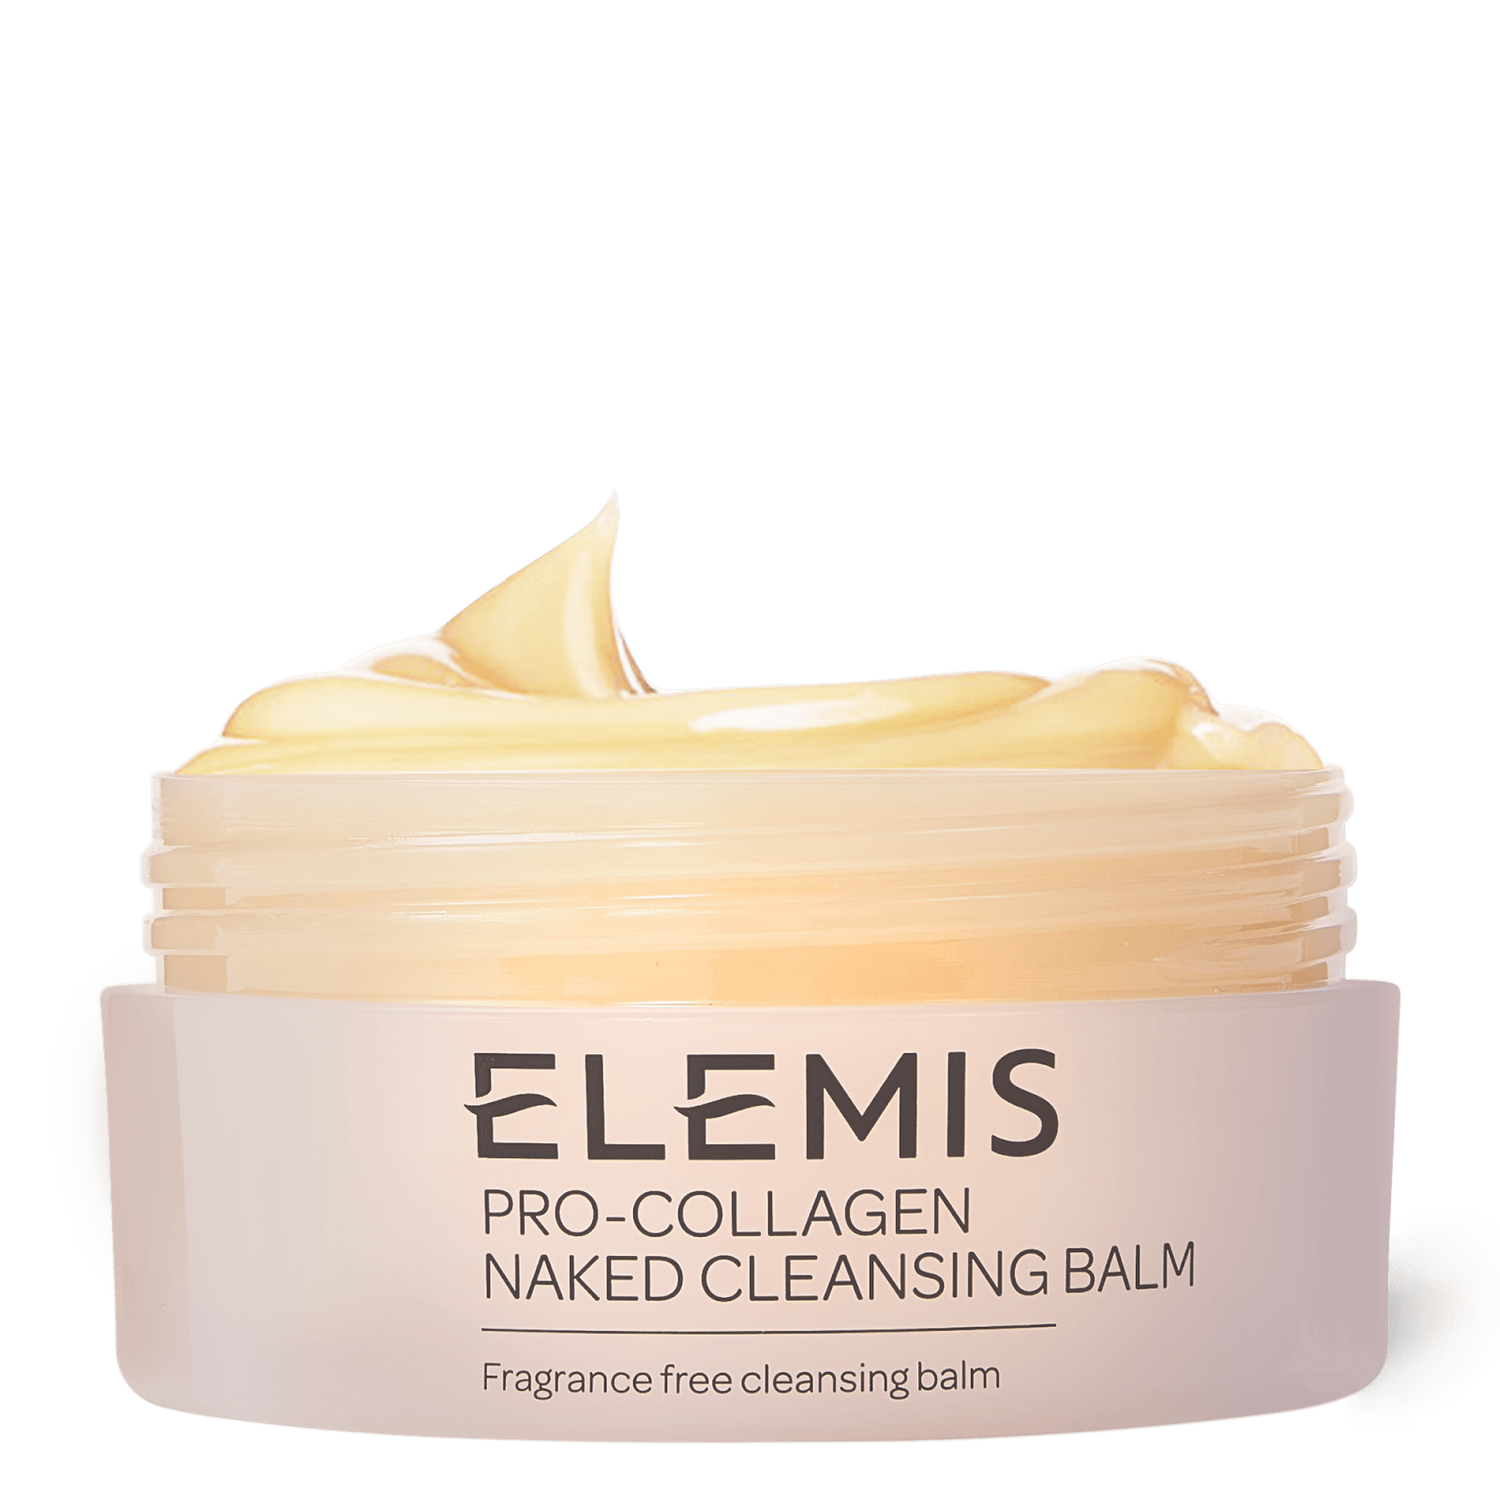 Elemis Pro-Collagen Naked Cleansing Balm 100 g - интернет-магазин профессиональной косметики Spadream, изображение 41837